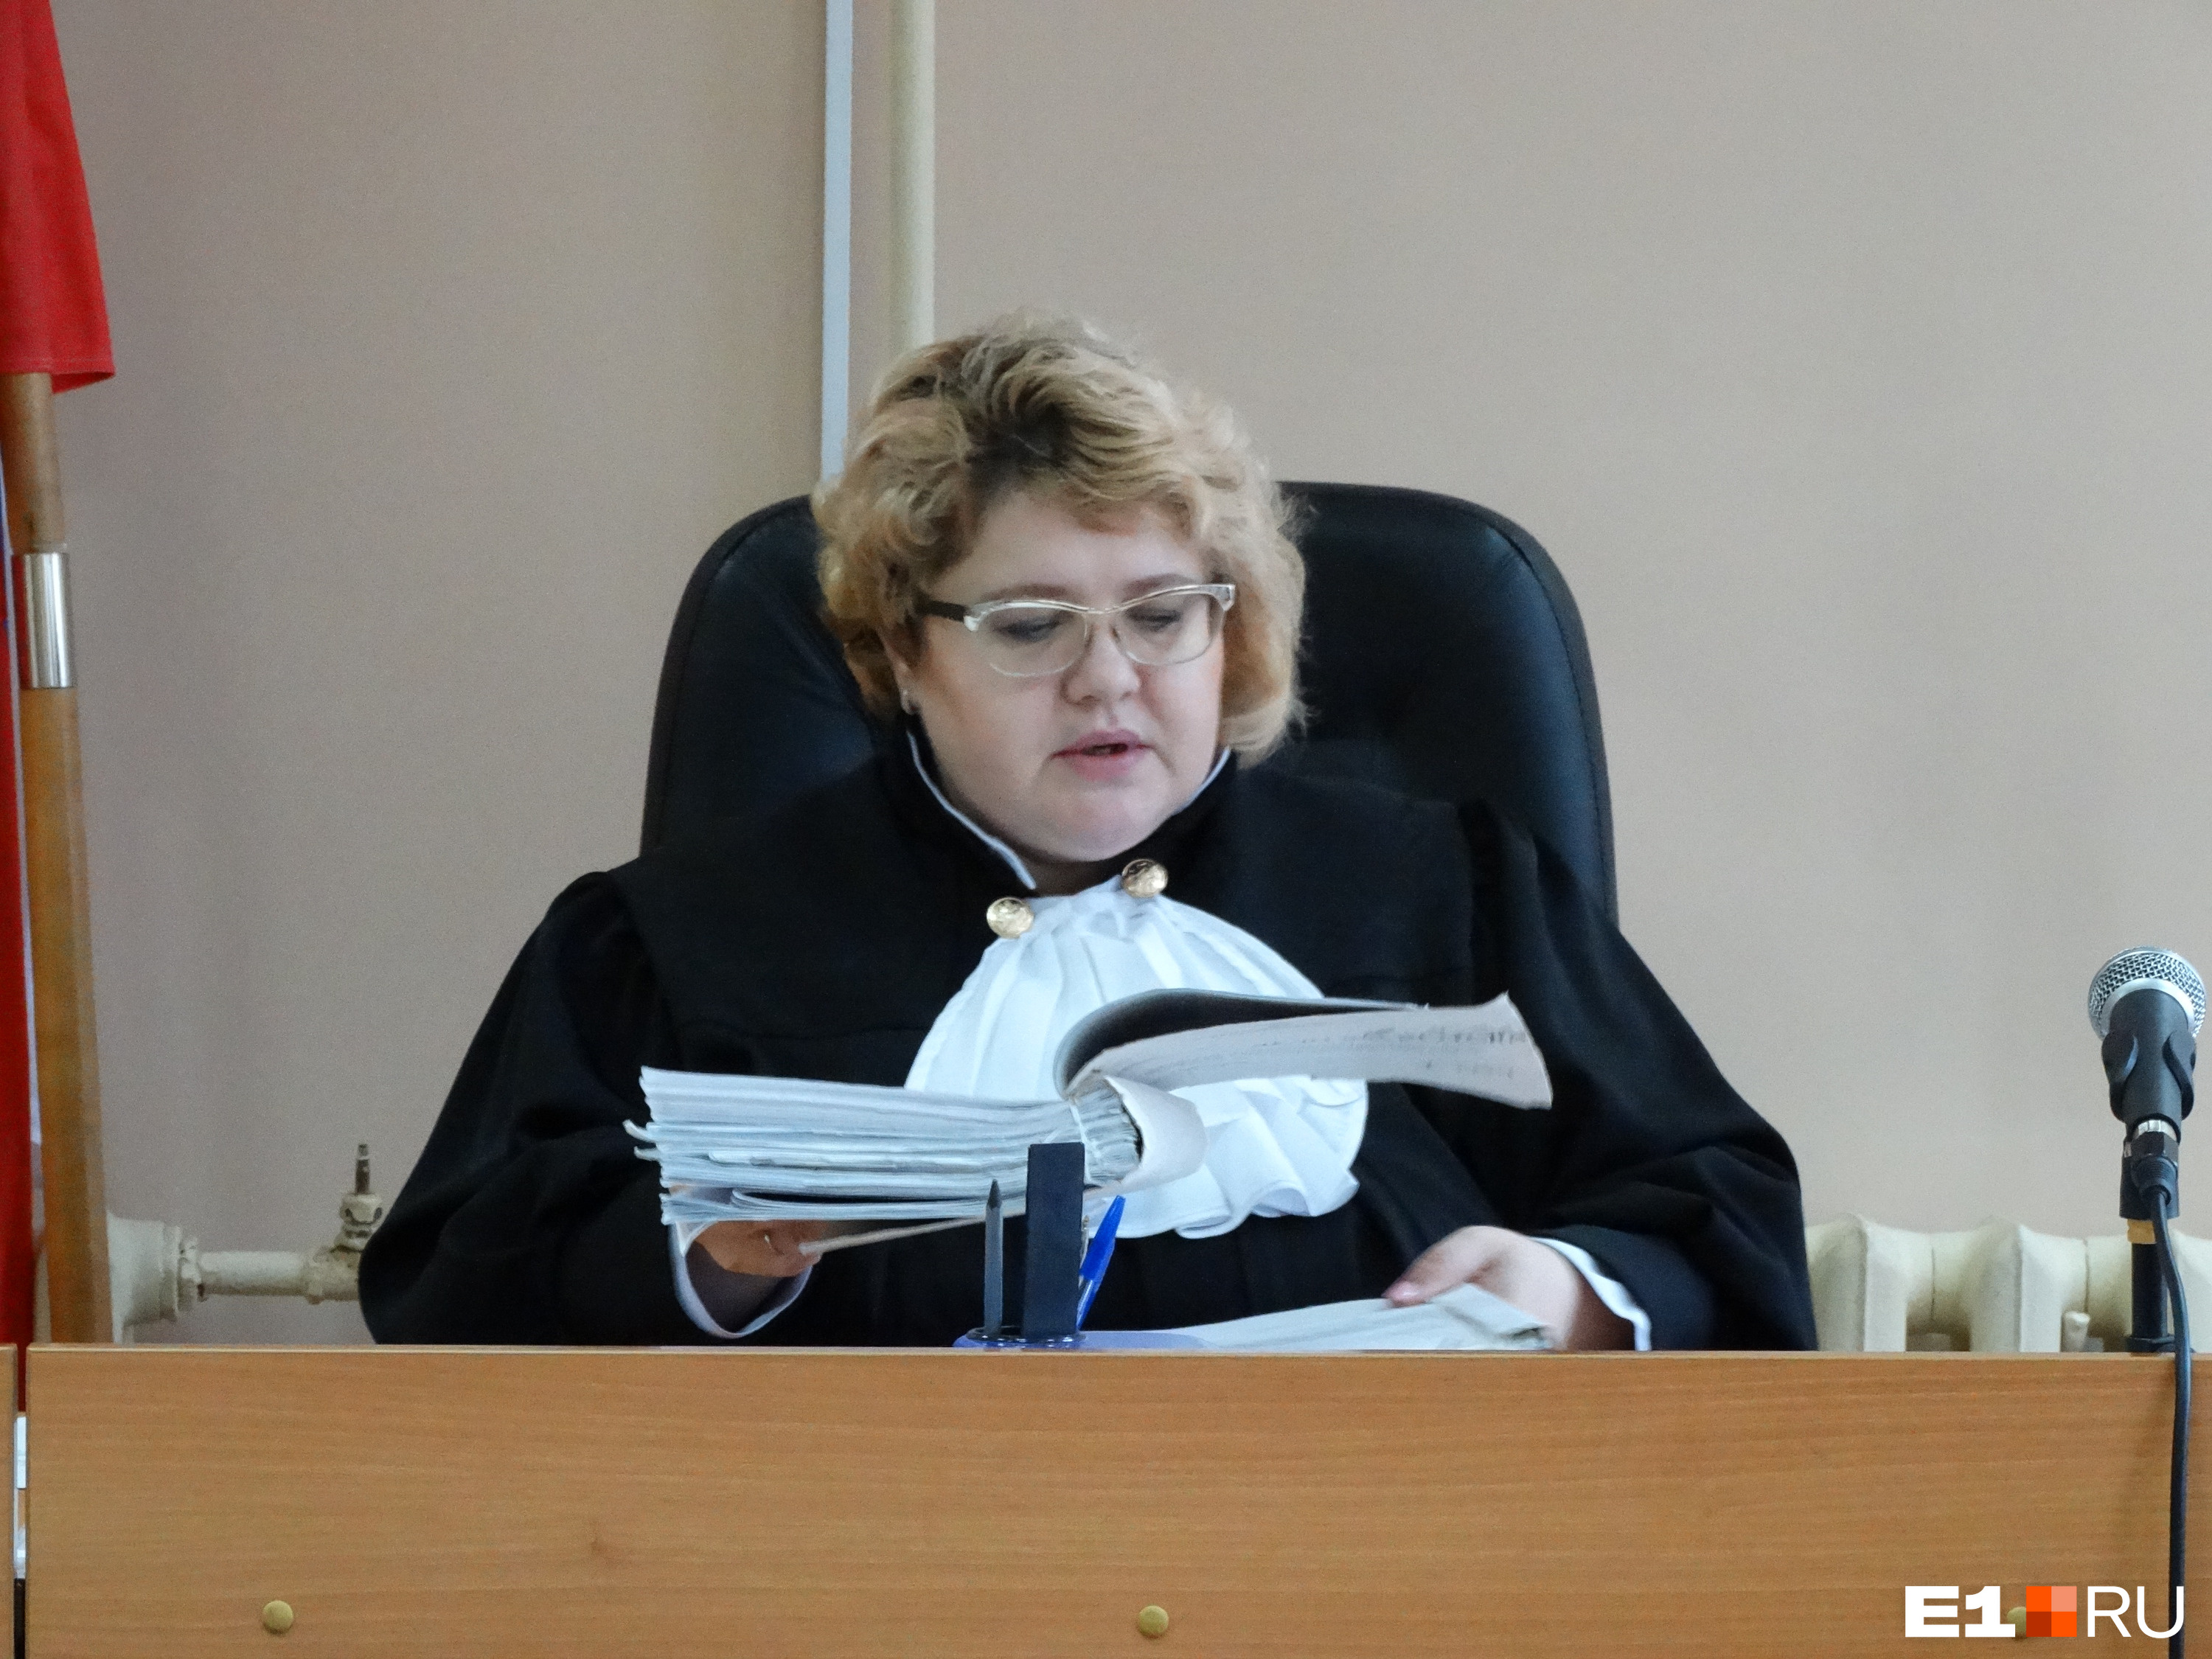 На следующем судебном заседании судья выслушает показания отчима Дмитрия Лошагина